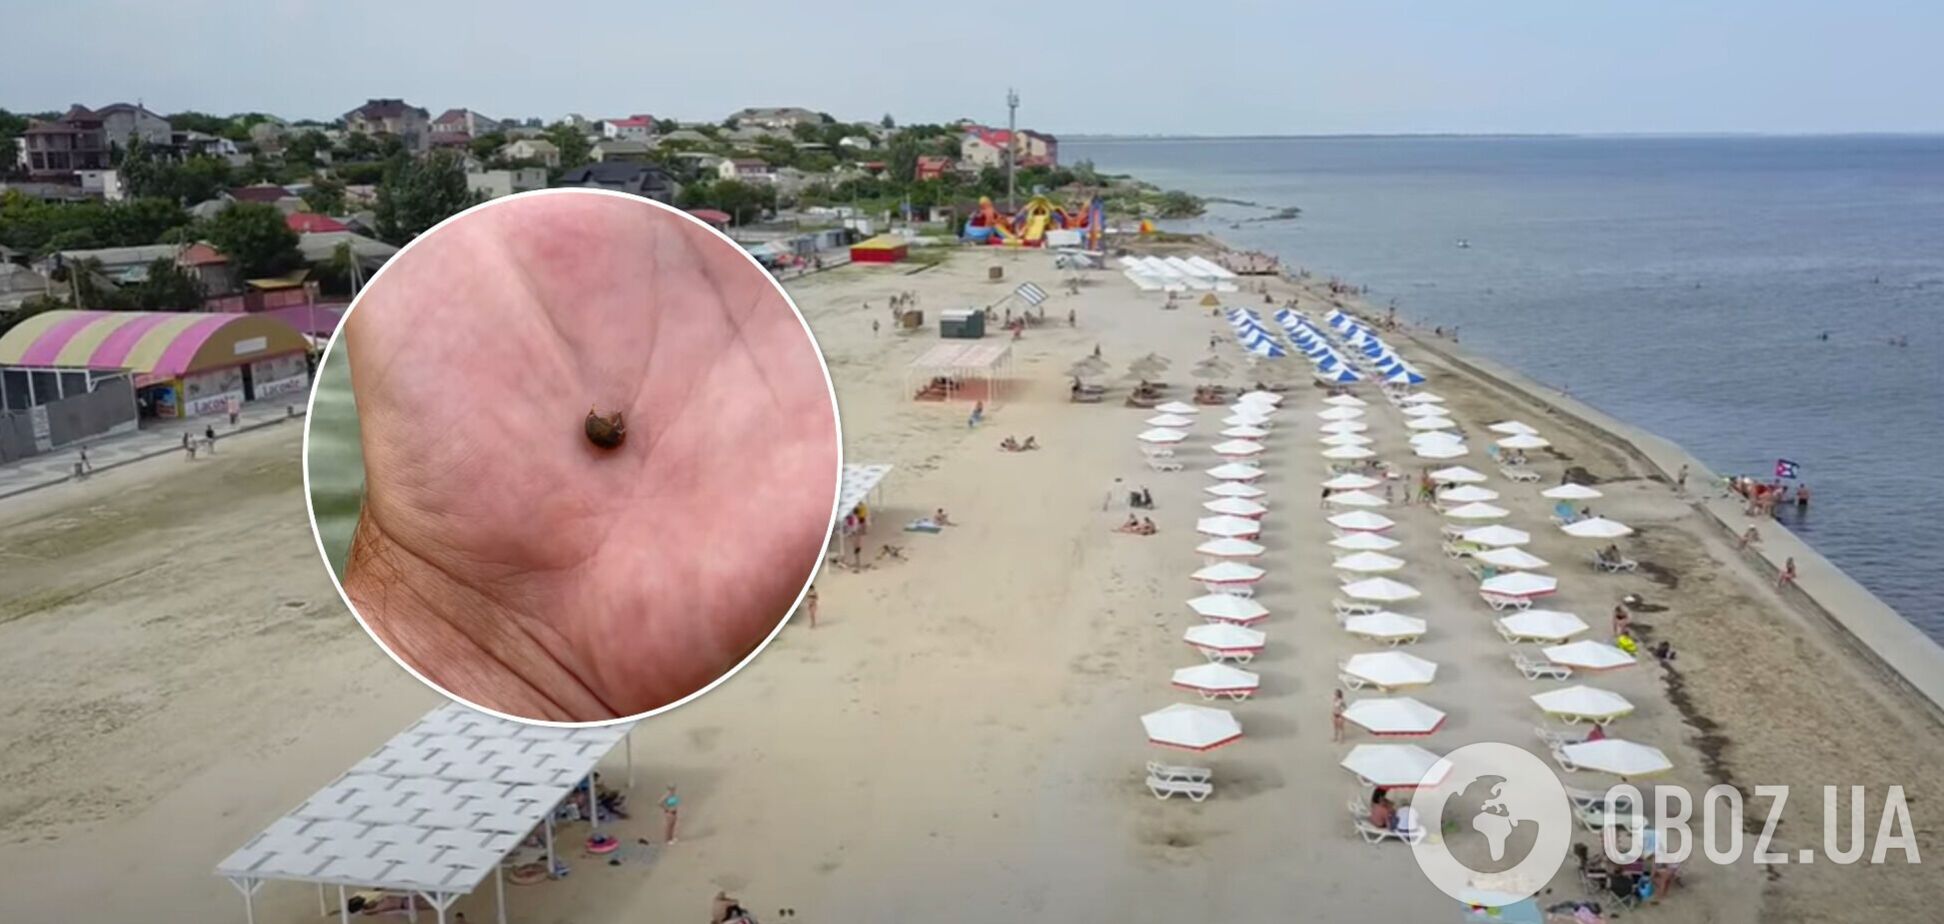 Море блох, медузы, а людей – почти нет: туриста неприятно удивил отдых в Геническе. Фото и видео